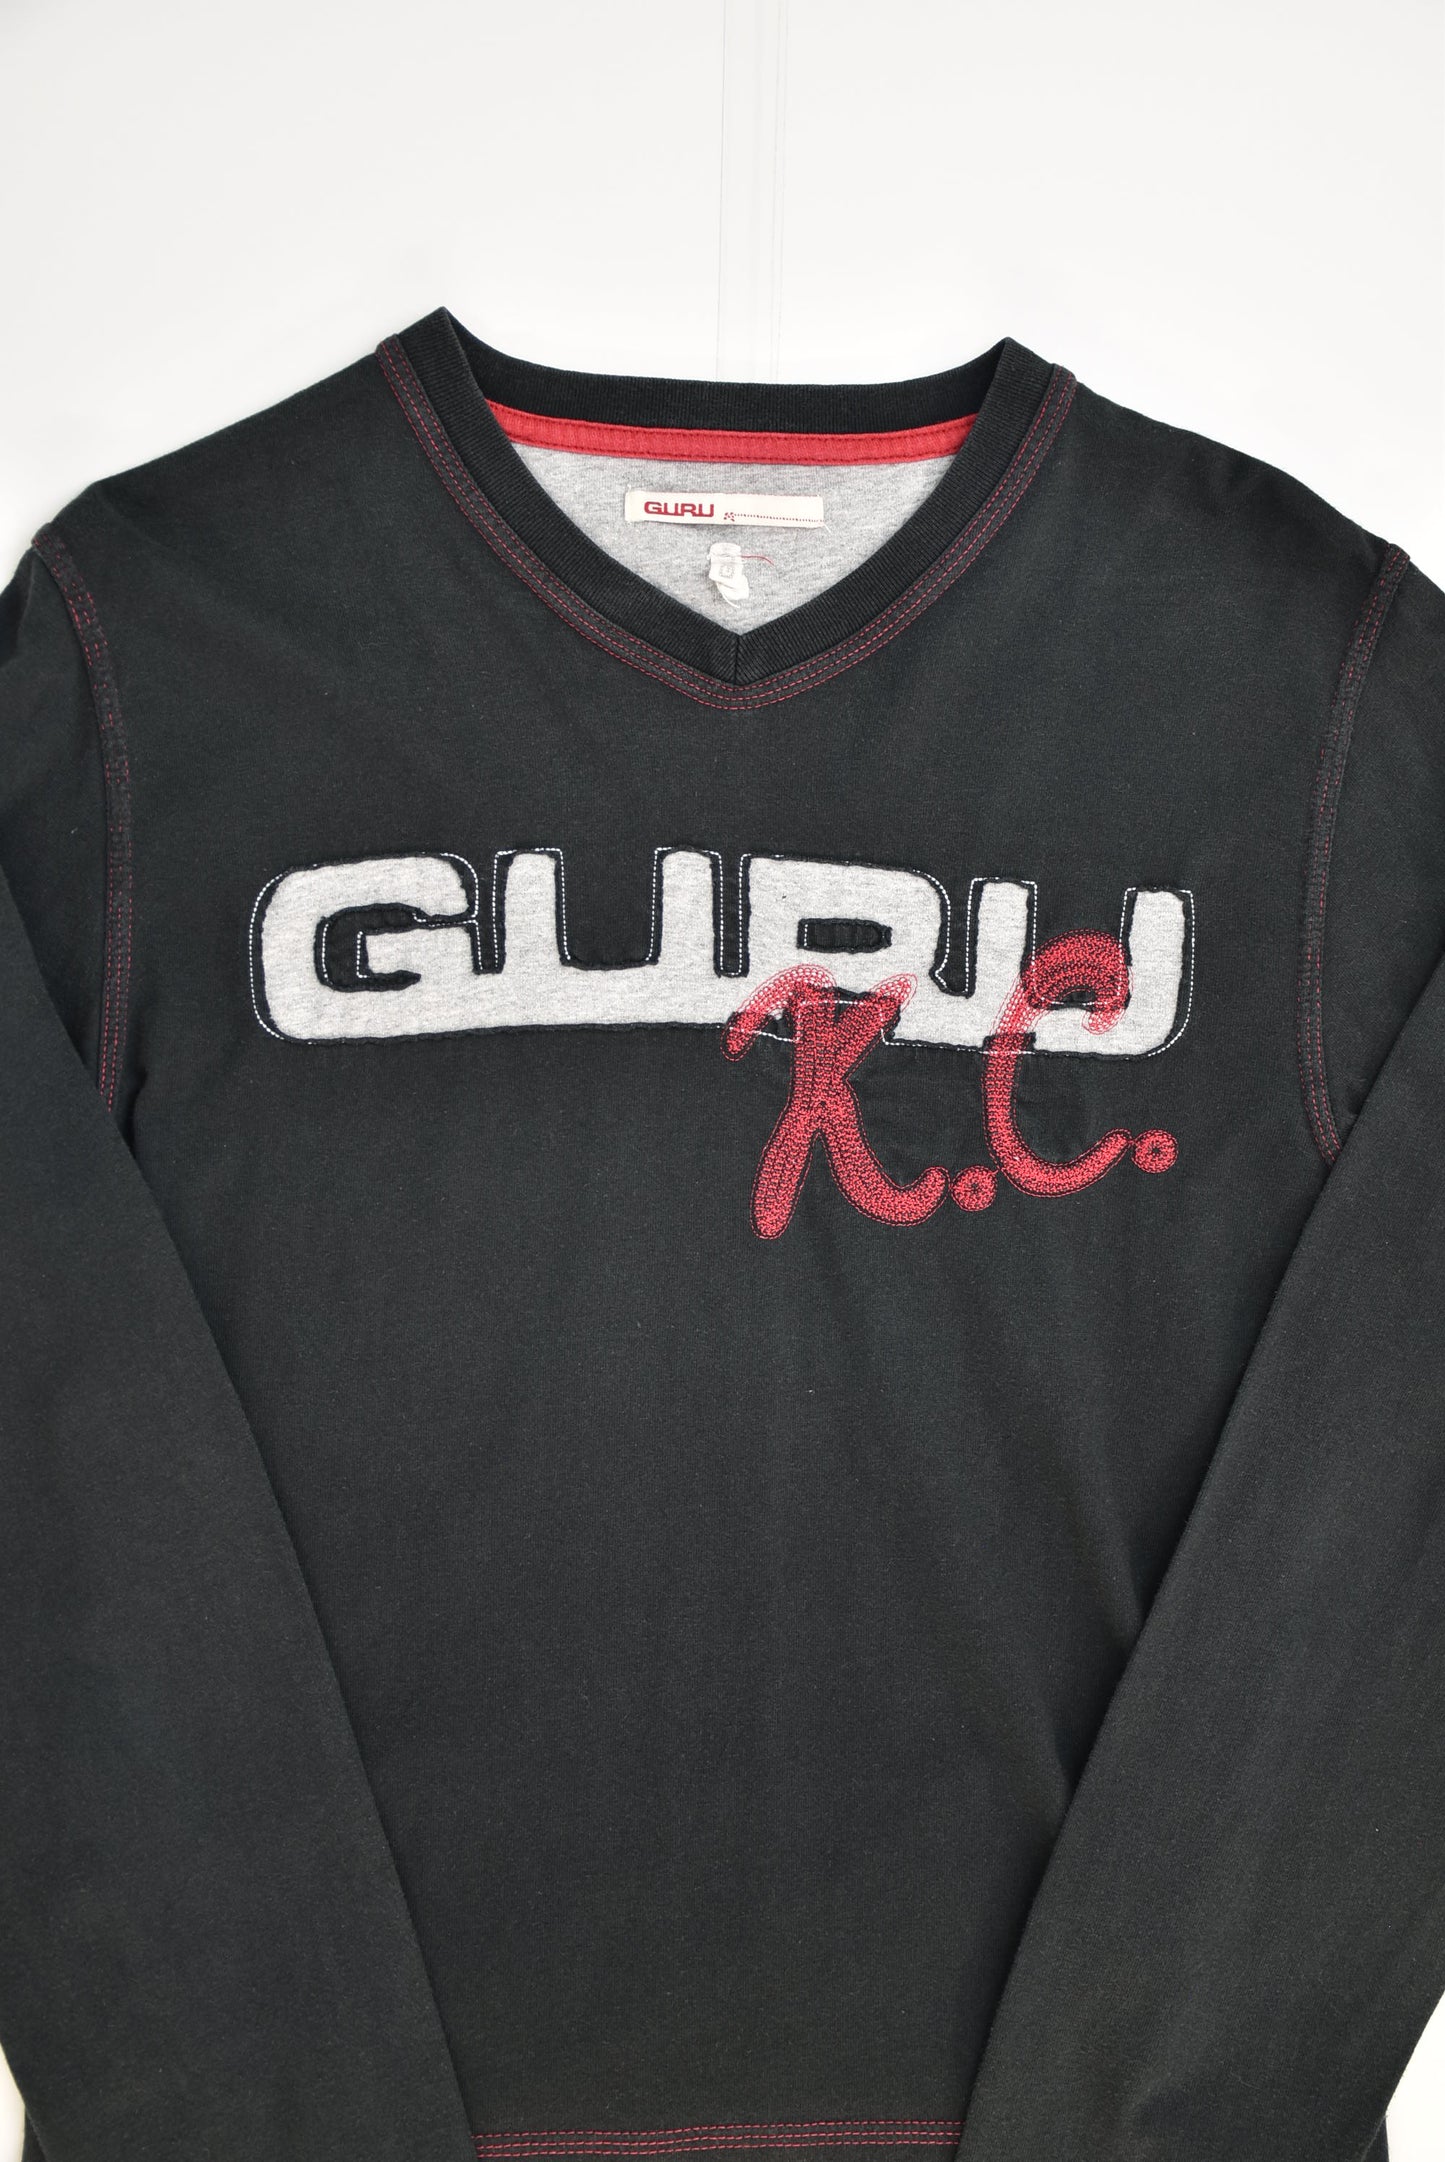 Guru T-shirt (M)